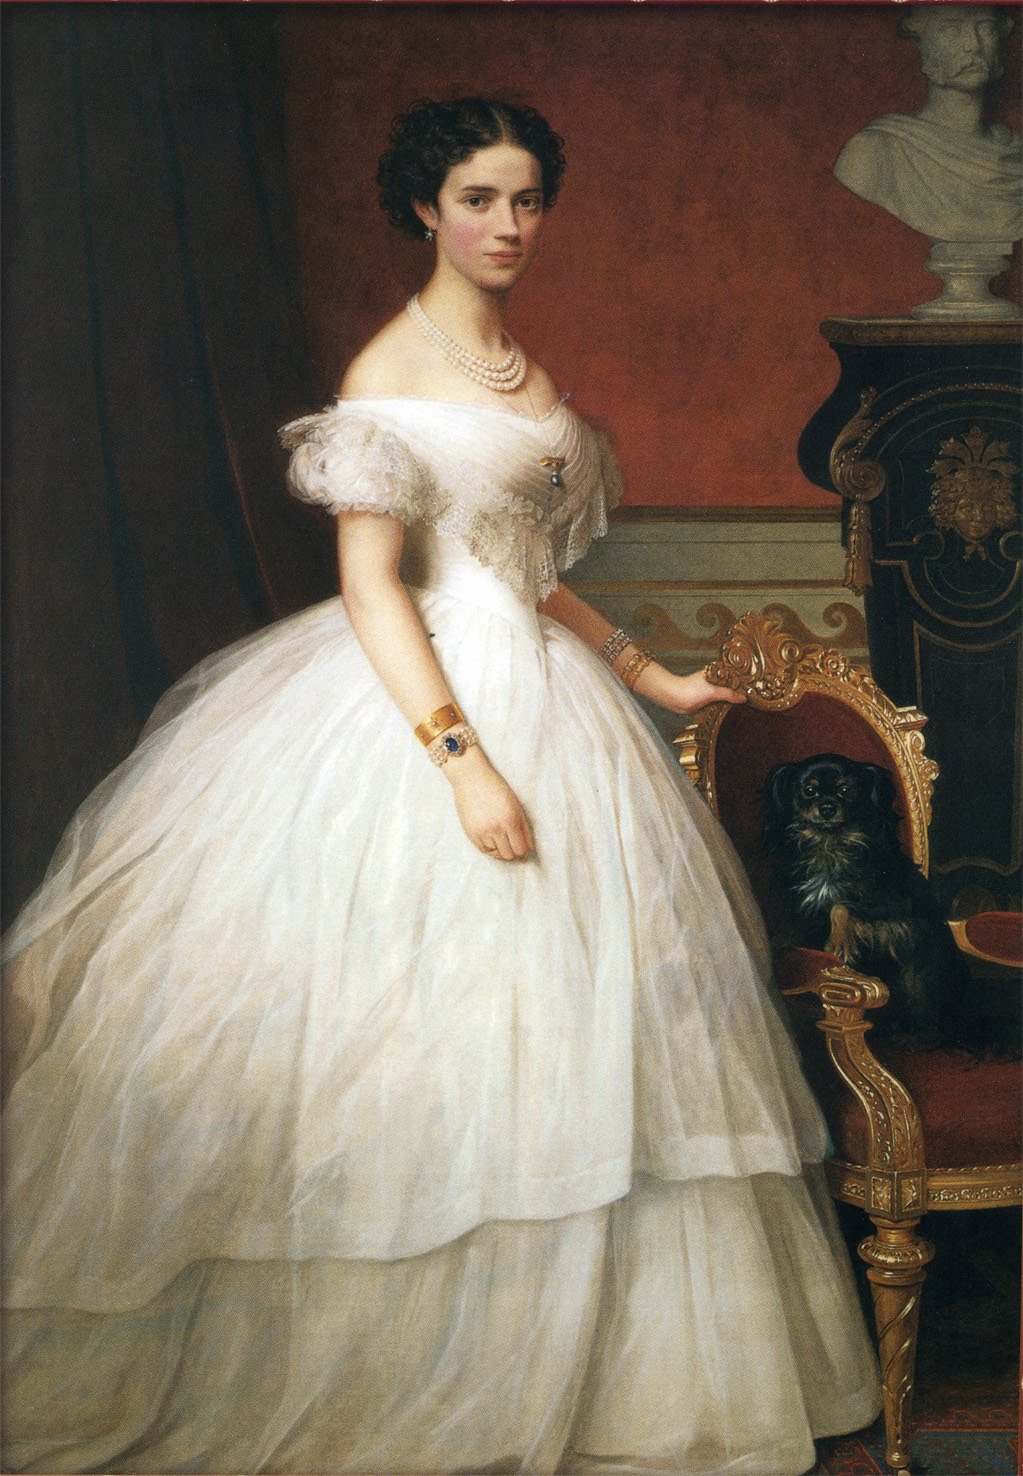 Váy Crinoline là kiểu váy rất được quý tộc châu Âu ưa thích trong thế kỷ XIX.